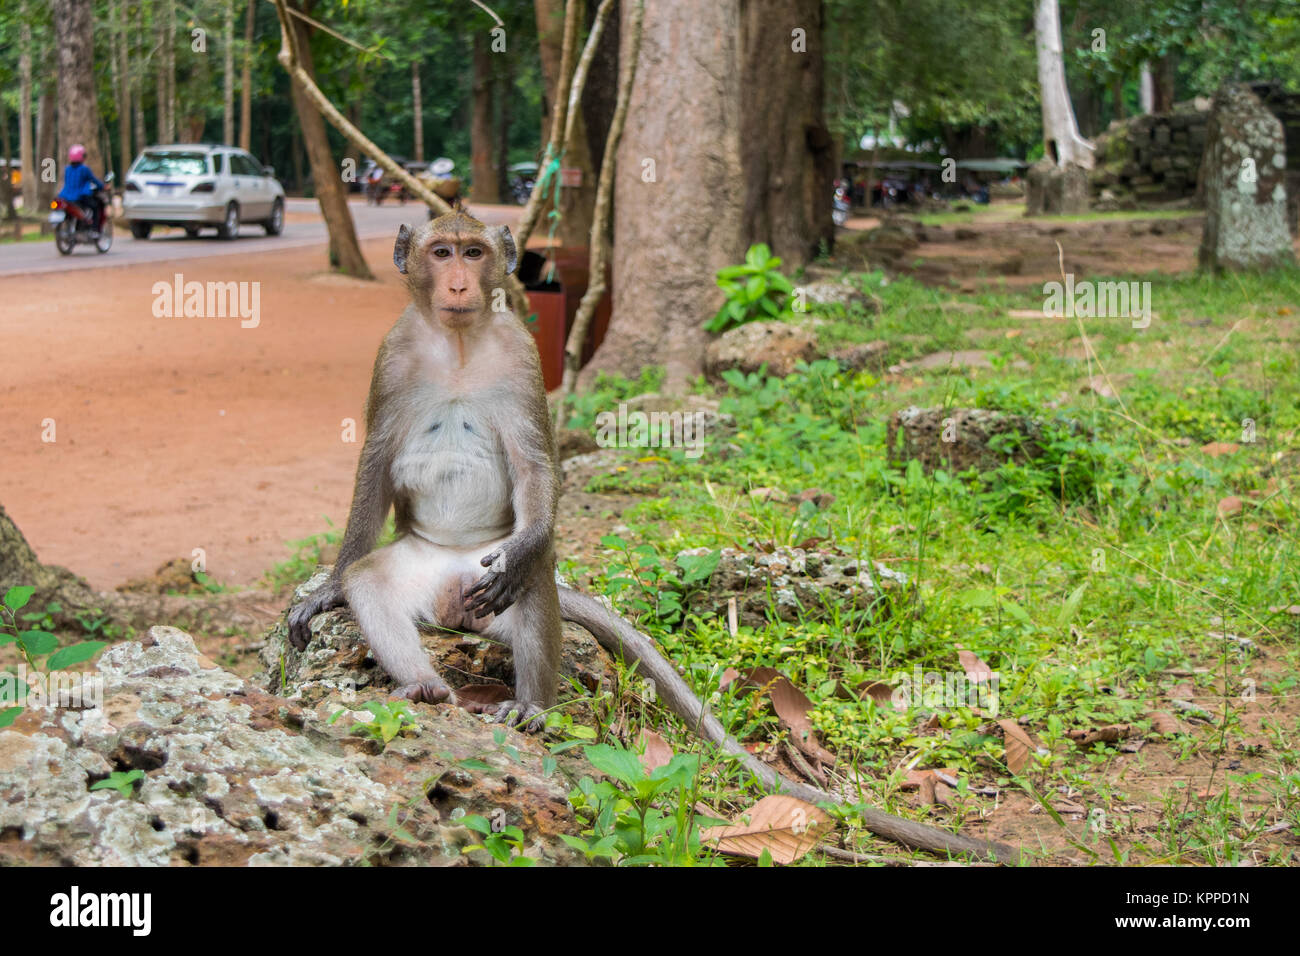 Un adulte singe macaque sitting on rock, se présentant comme si de méditer, de refroidissement ou de fumer une cigarette. Pas de crainte de personnes. Le Cambodge, en Asie du sud-est Banque D'Images